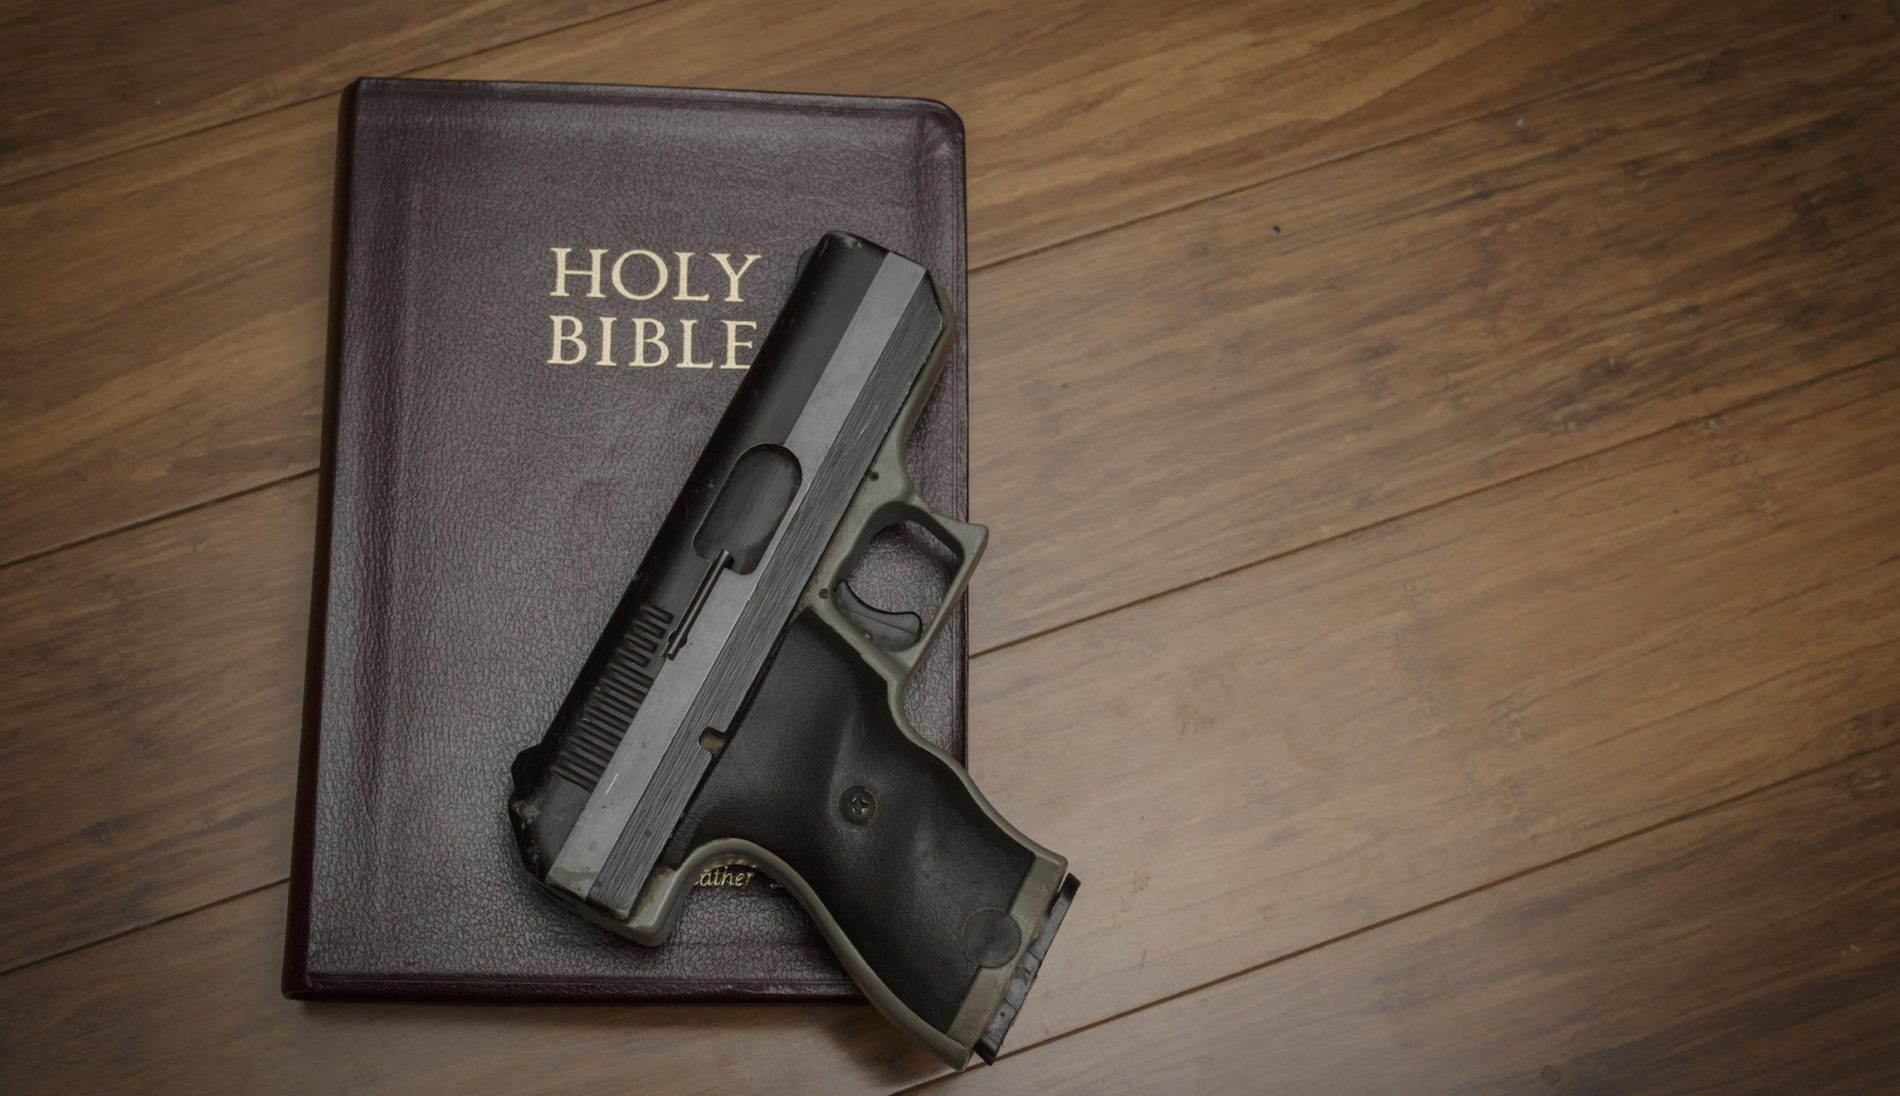 Os adventistas e a posse e porte de armas